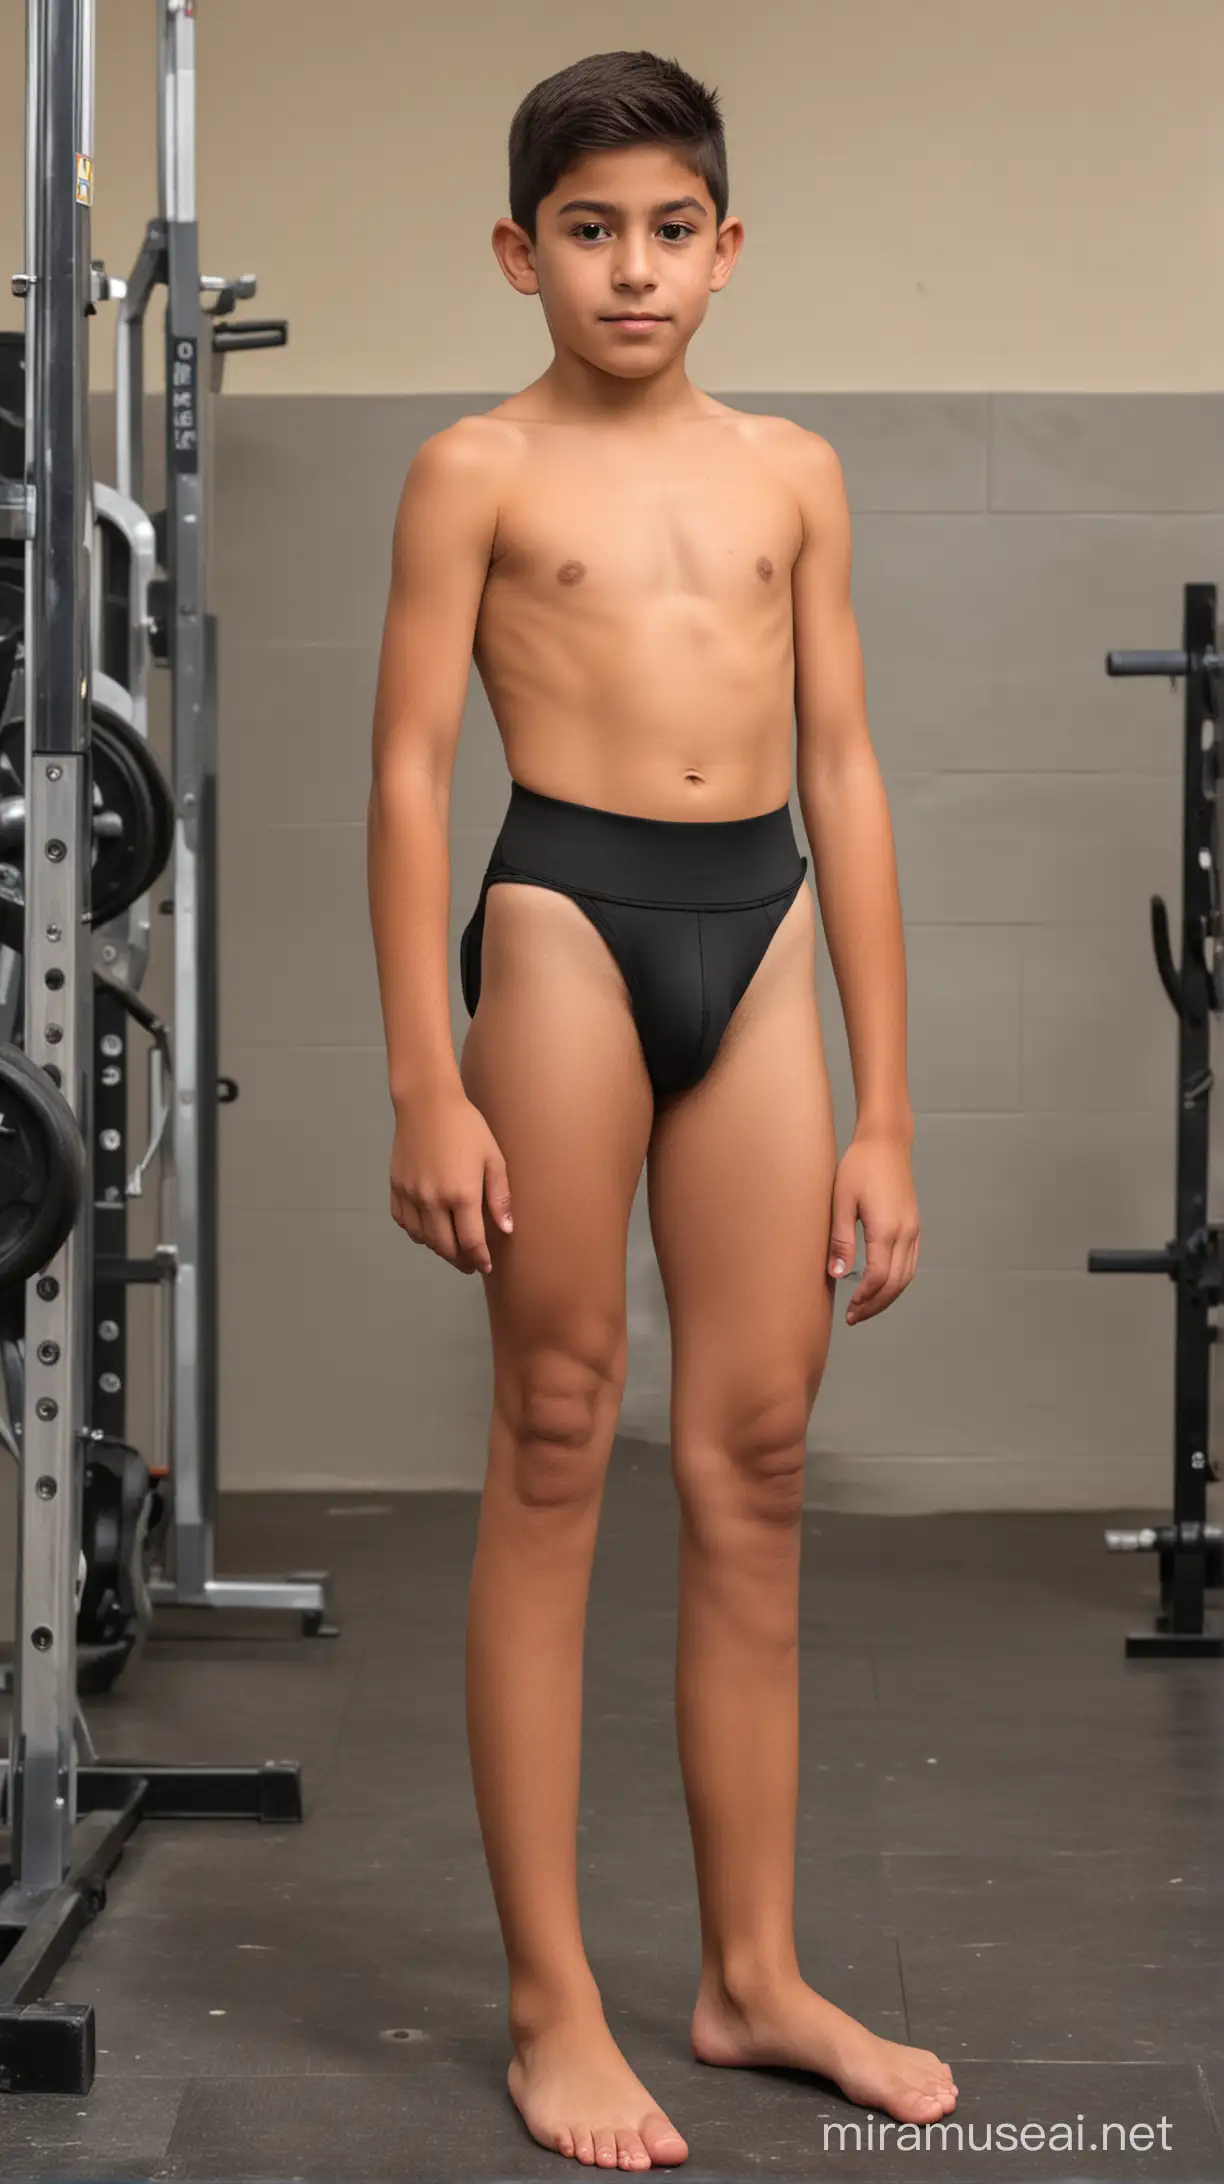 Niño mexicano delgado de 10 años usando jockstrap ñ en el gimnasio de la escuela